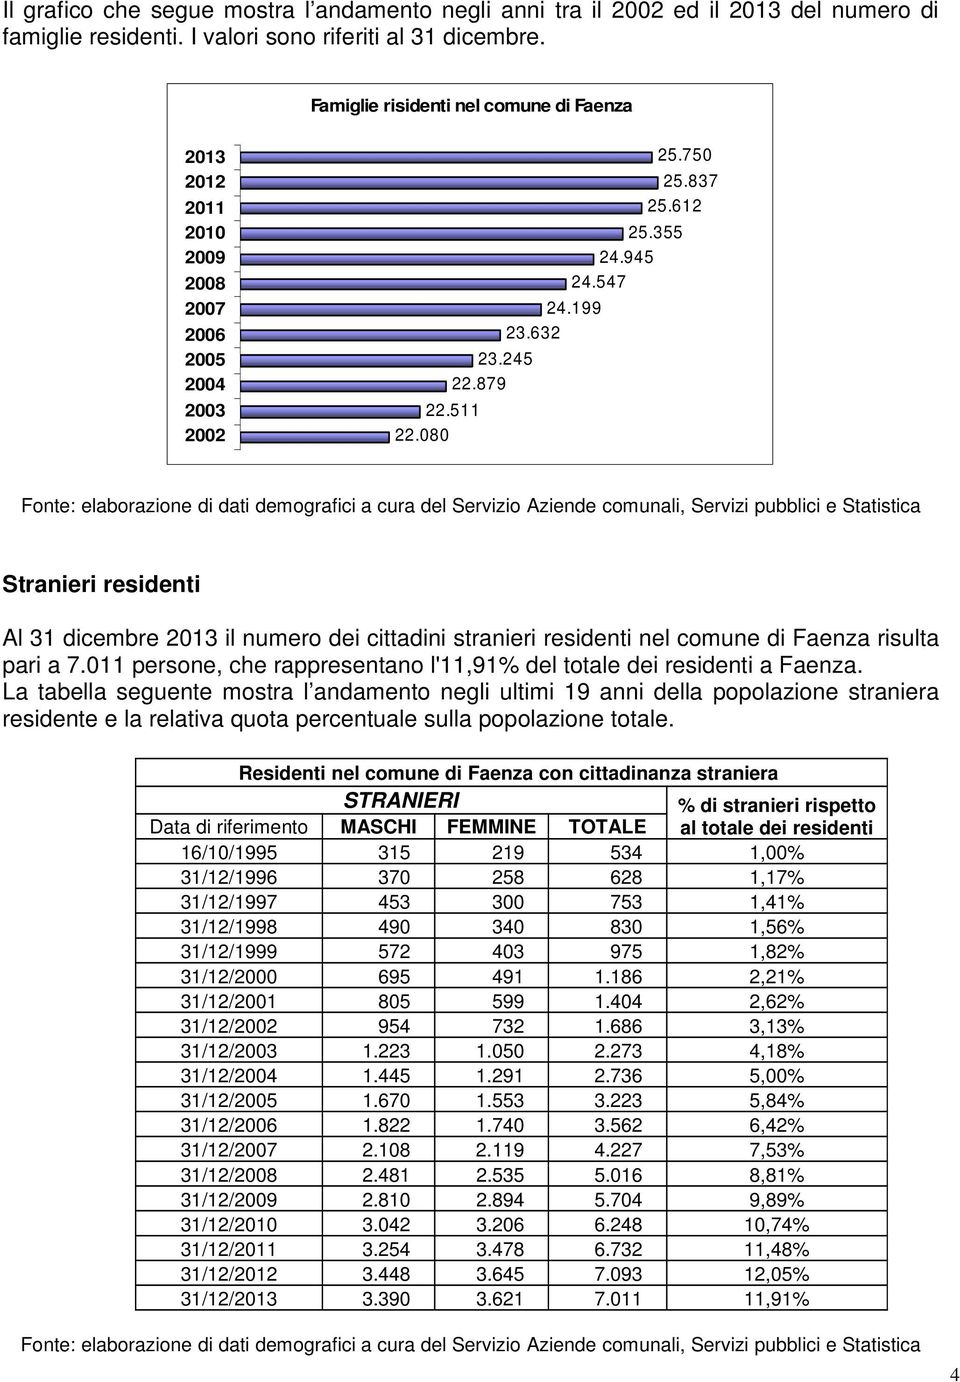 547 Stranieri residenti Al 31 dicembre 2013 il numero dei cittadini stranieri residenti nel comune di Faenza risulta pari a 7.011 persone, che rappresentano l'11,91% del totale dei residenti a Faenza.